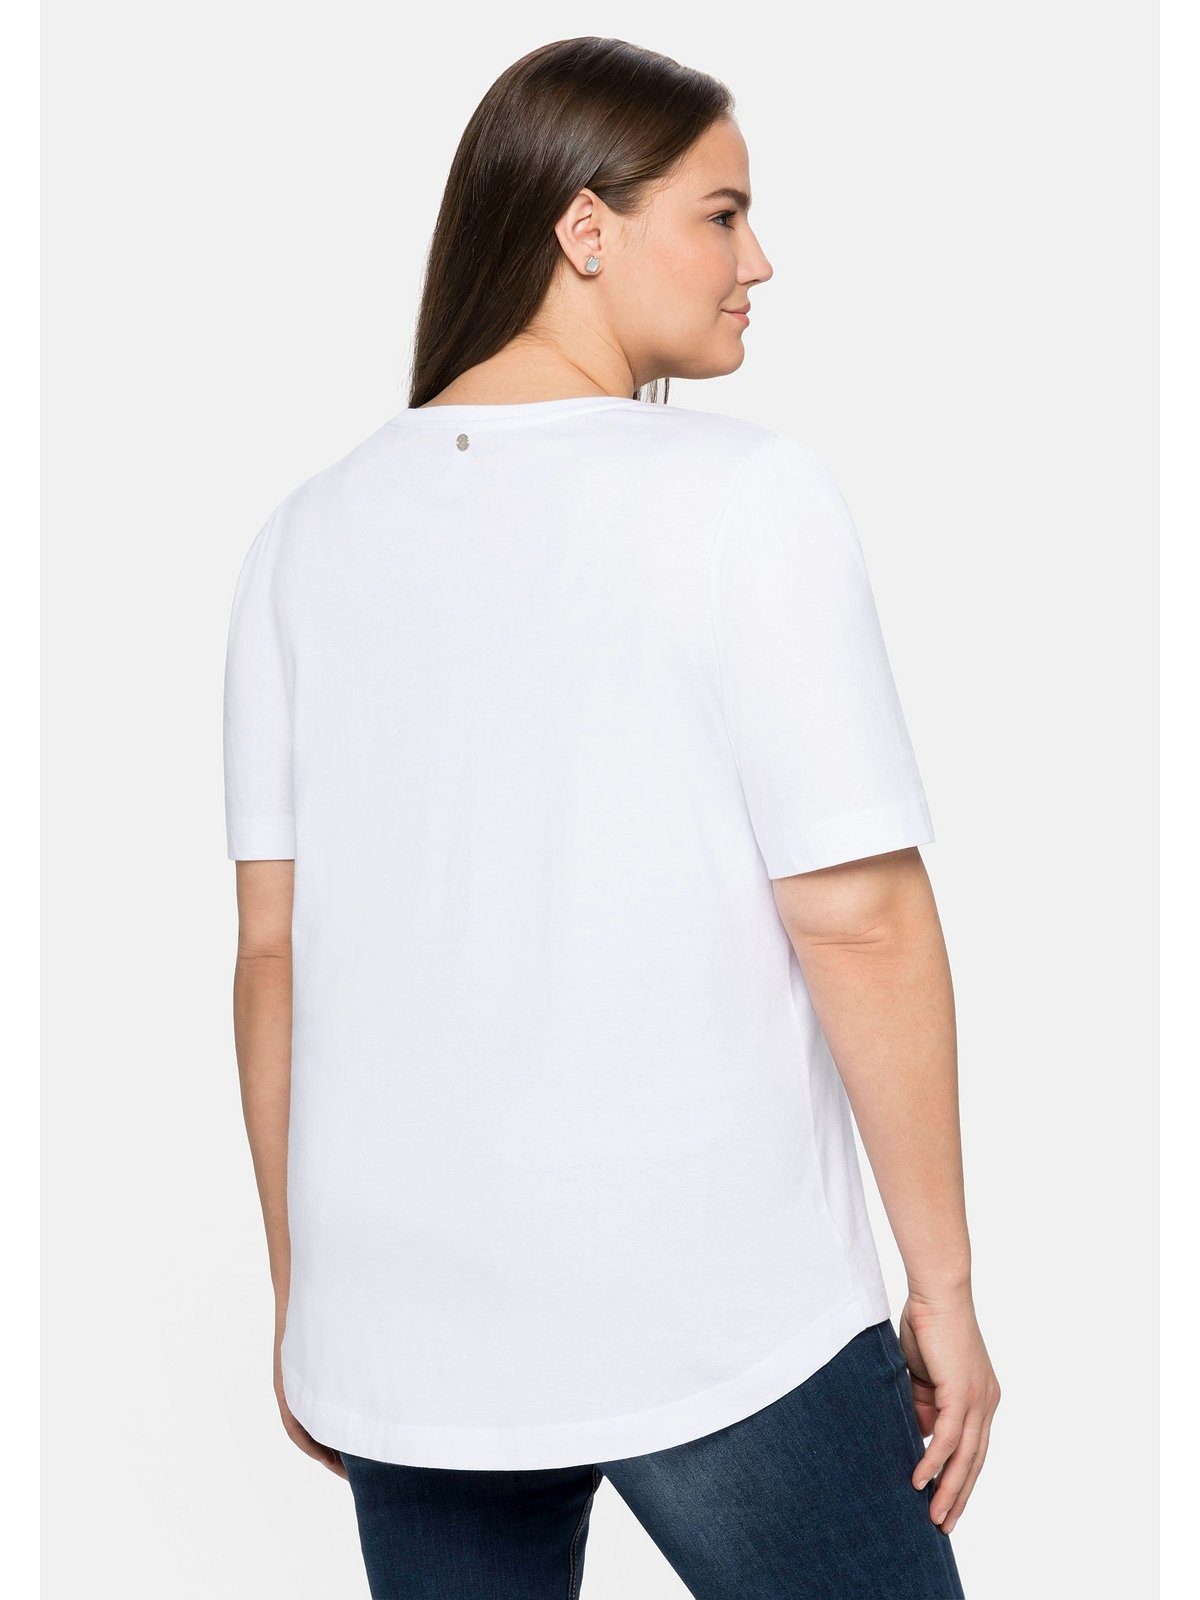 Sheego T-Shirt Große aus weiß Baumwolle mit Frontdruck Größen